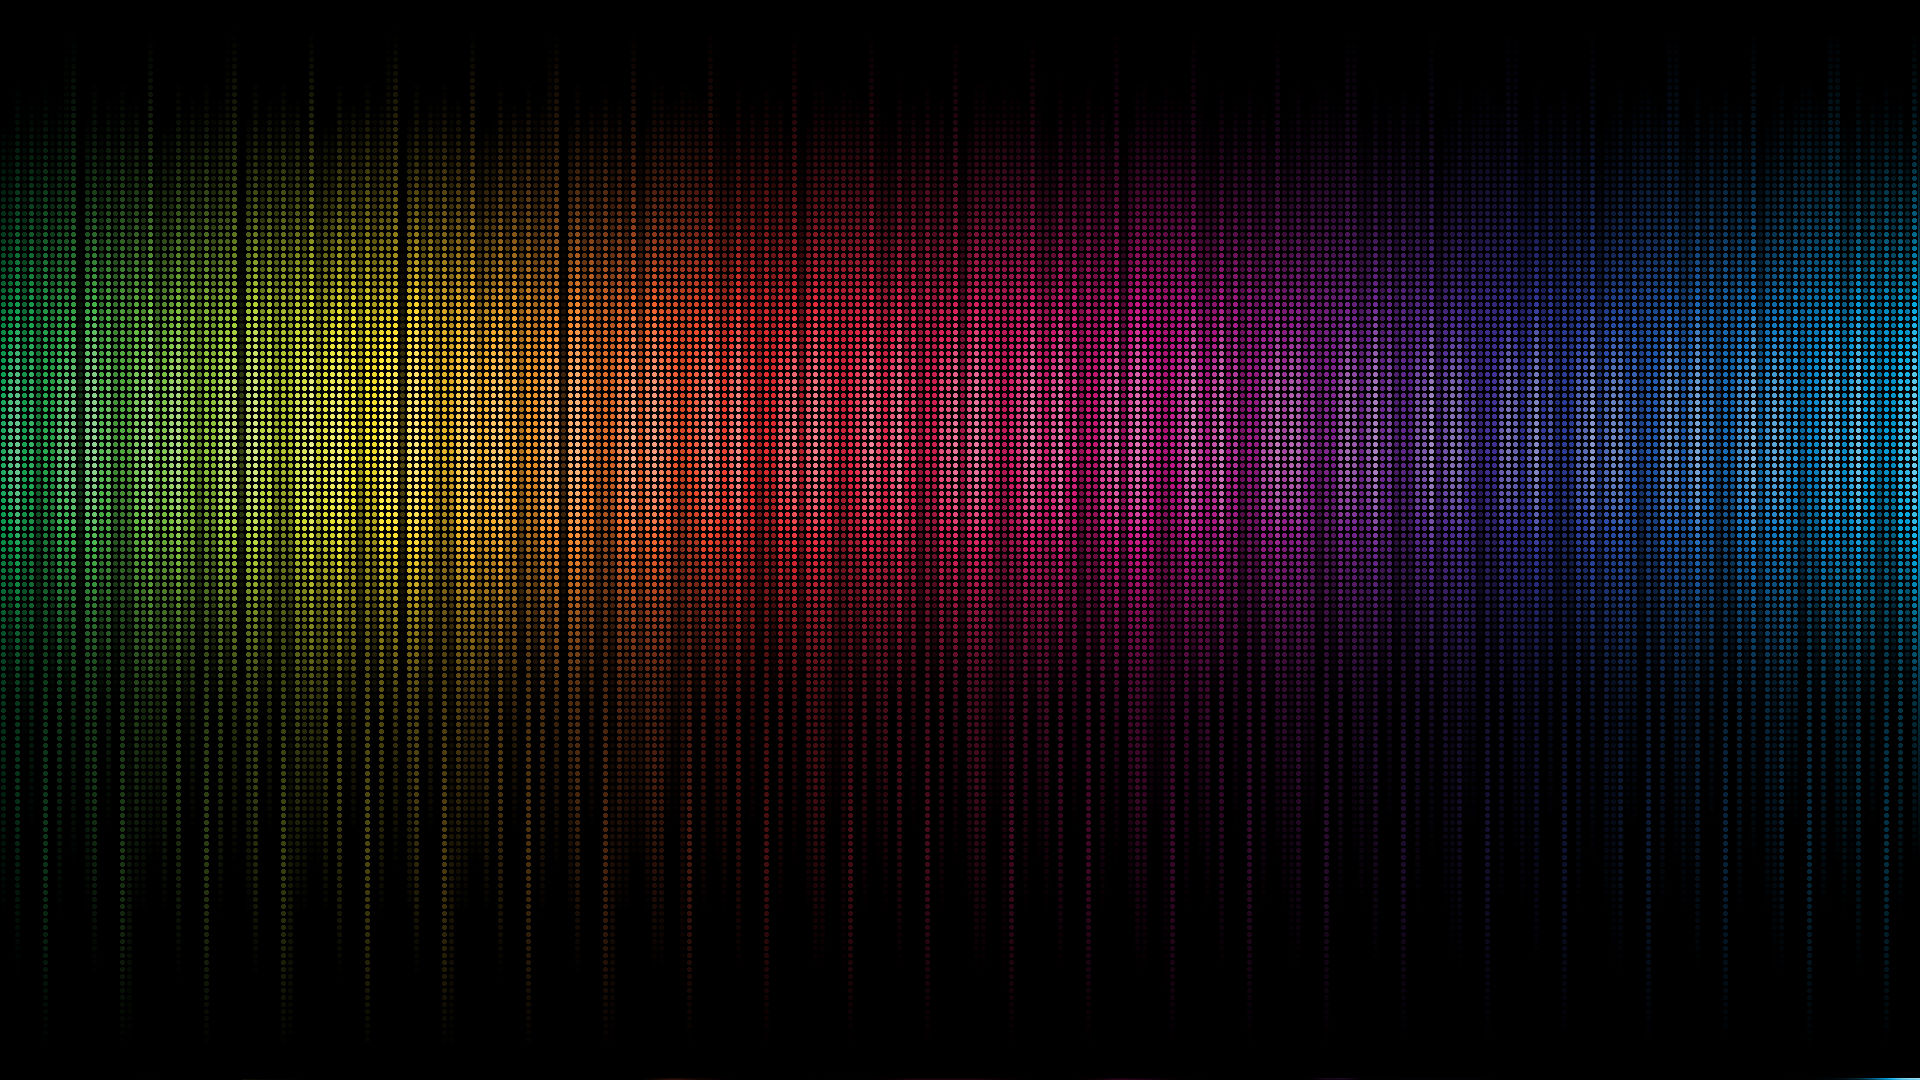 abstract, multicolor, rainbows - desktop wallpaper